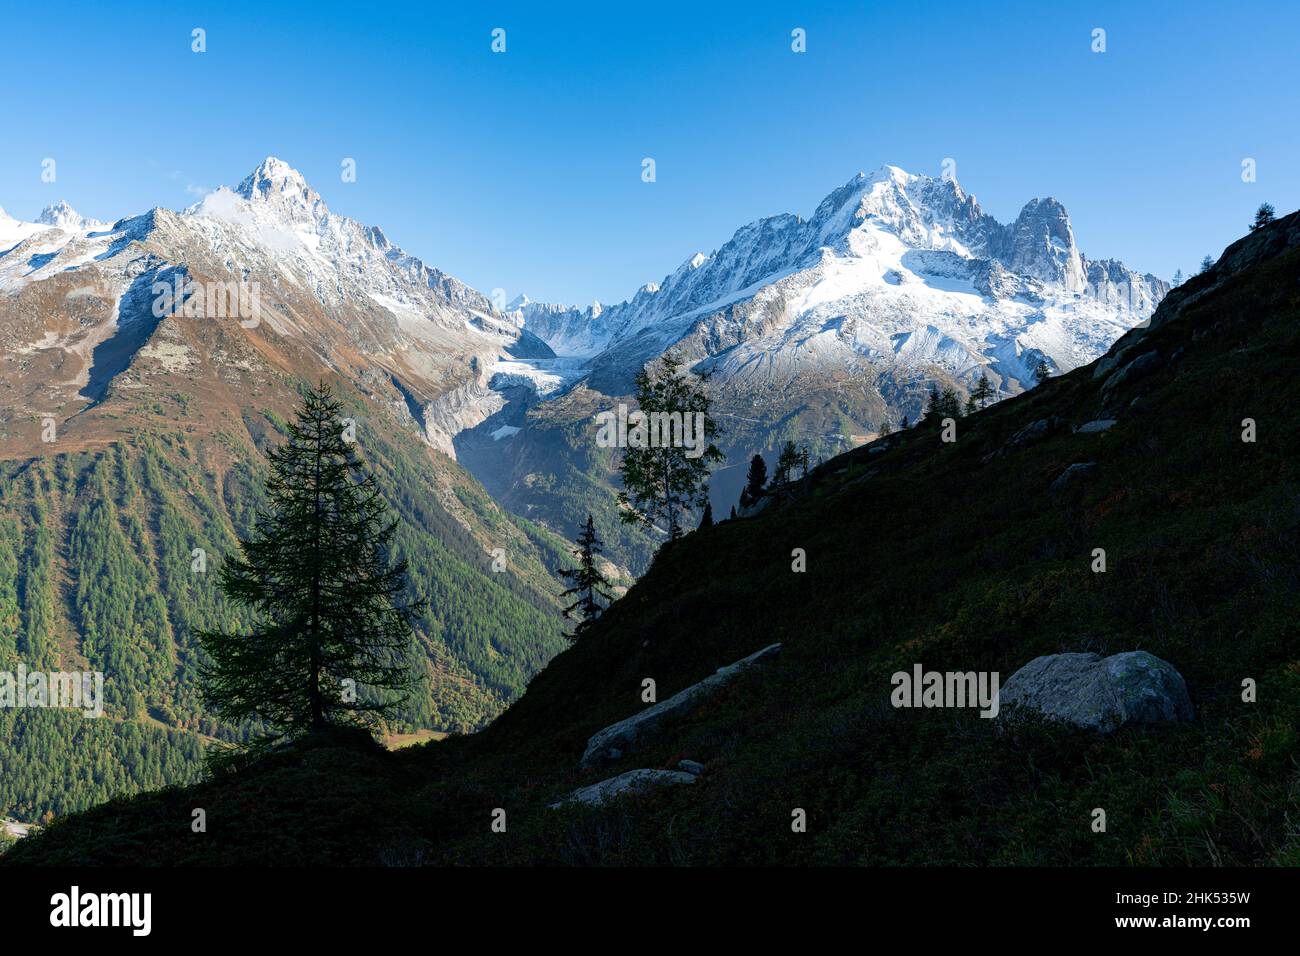 Majestic peaks Aiguille du Chardonnet, Aiguille Verte and Argentiere Glacier, Mont Blanc Massif, Chamonix, Haute Savoie, French Alps, France, Europe Stock Photo